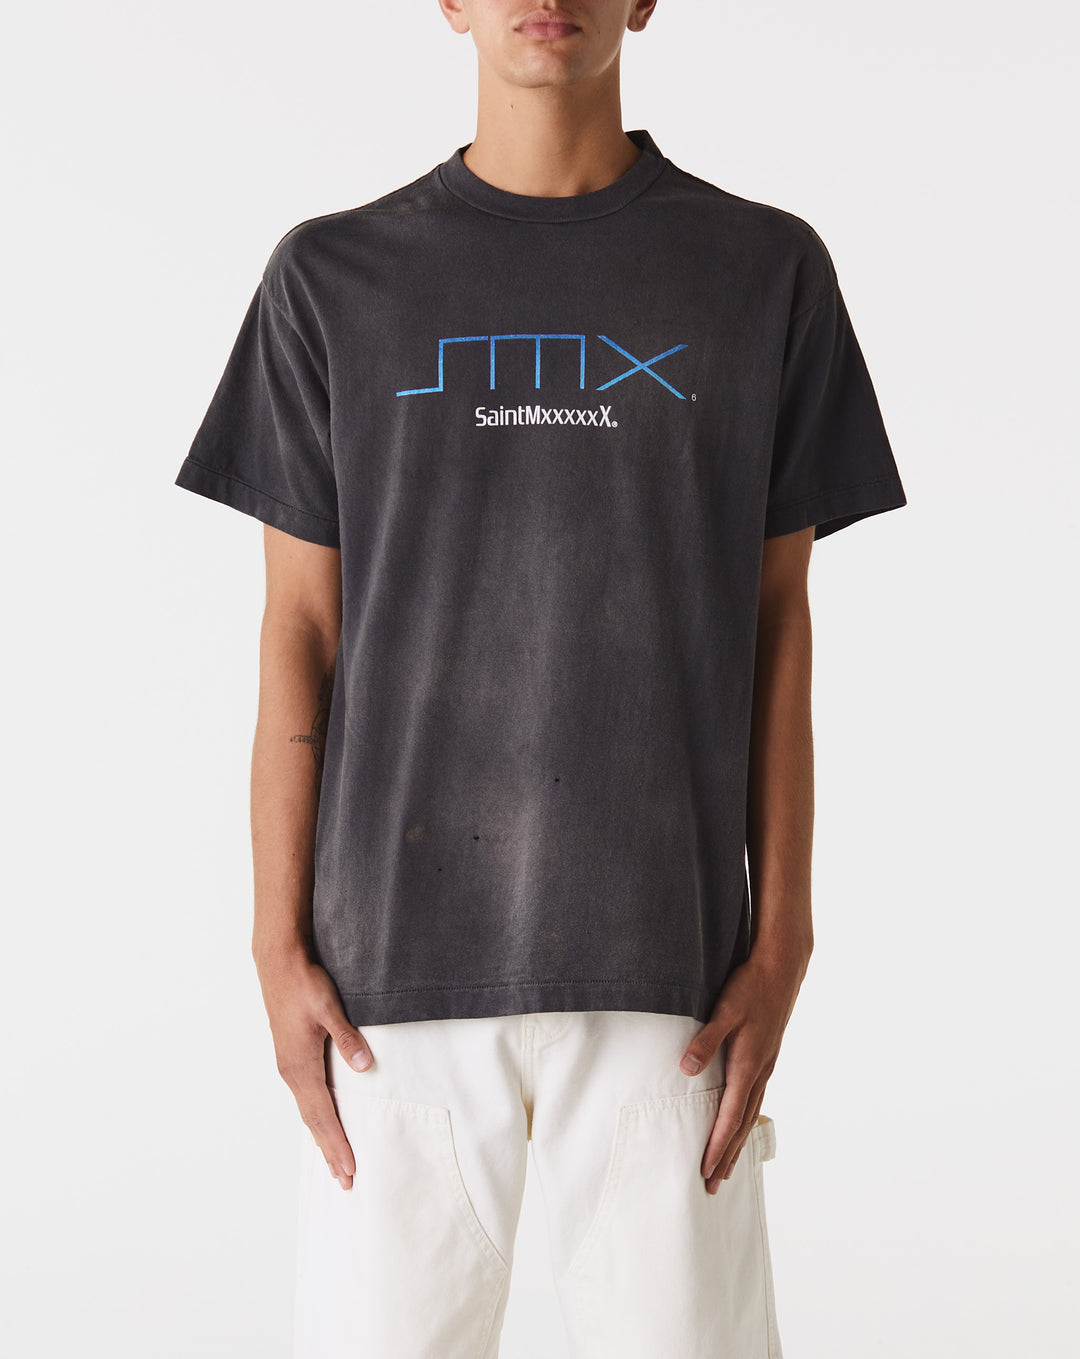 Saint Michael SM6 T-Shirt  - XHIBITION